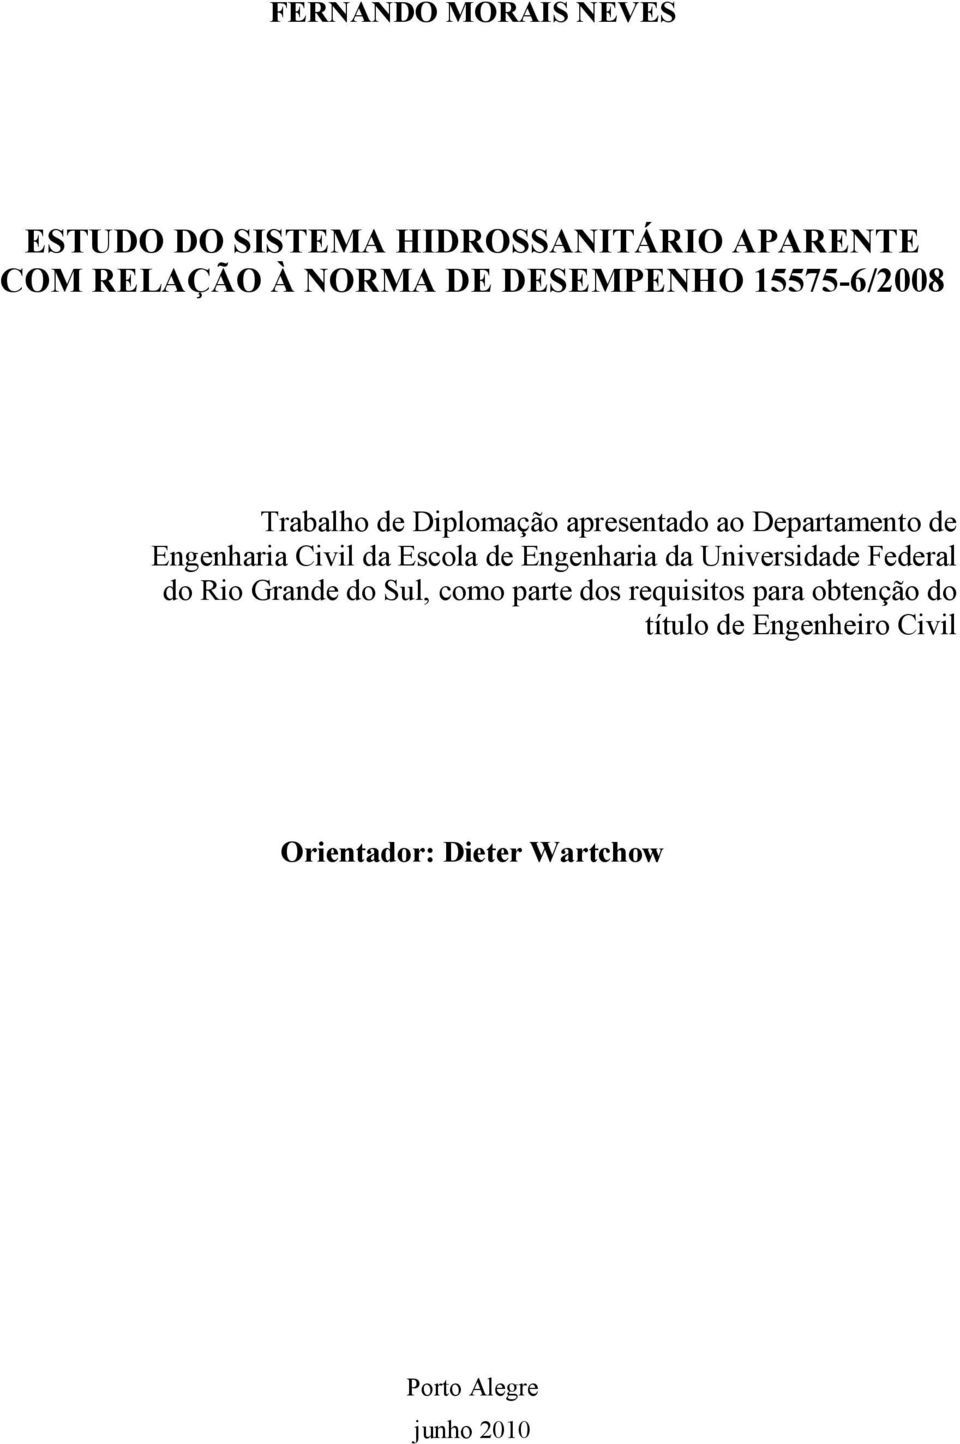 Civil da Escola de Engenharia da Universidade Federal do Rio Grande do Sul, como parte dos